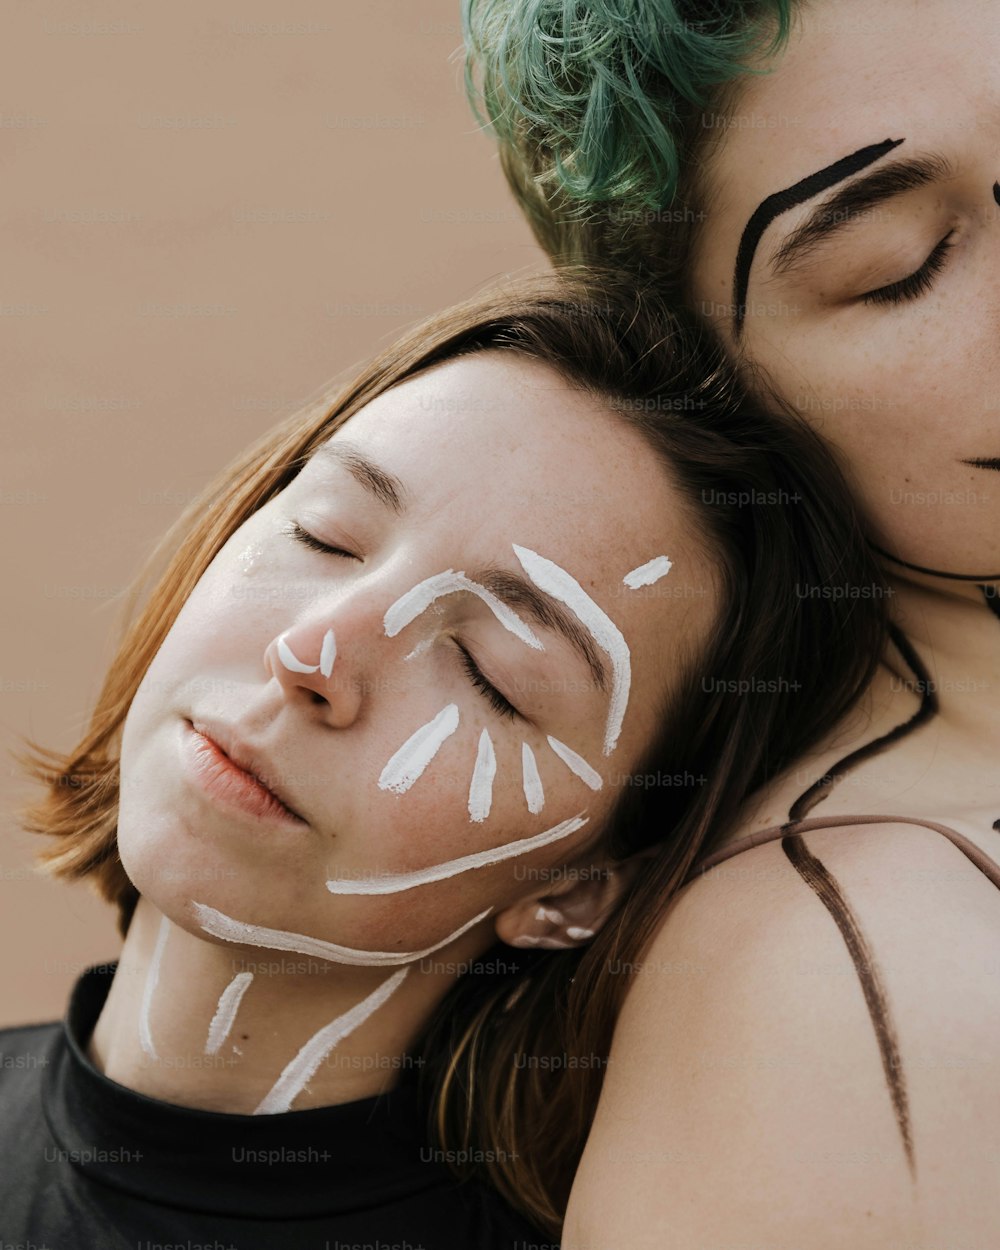 Une femme aux cheveux verts étreignant une femme avec de la peinture blanche pour le visage